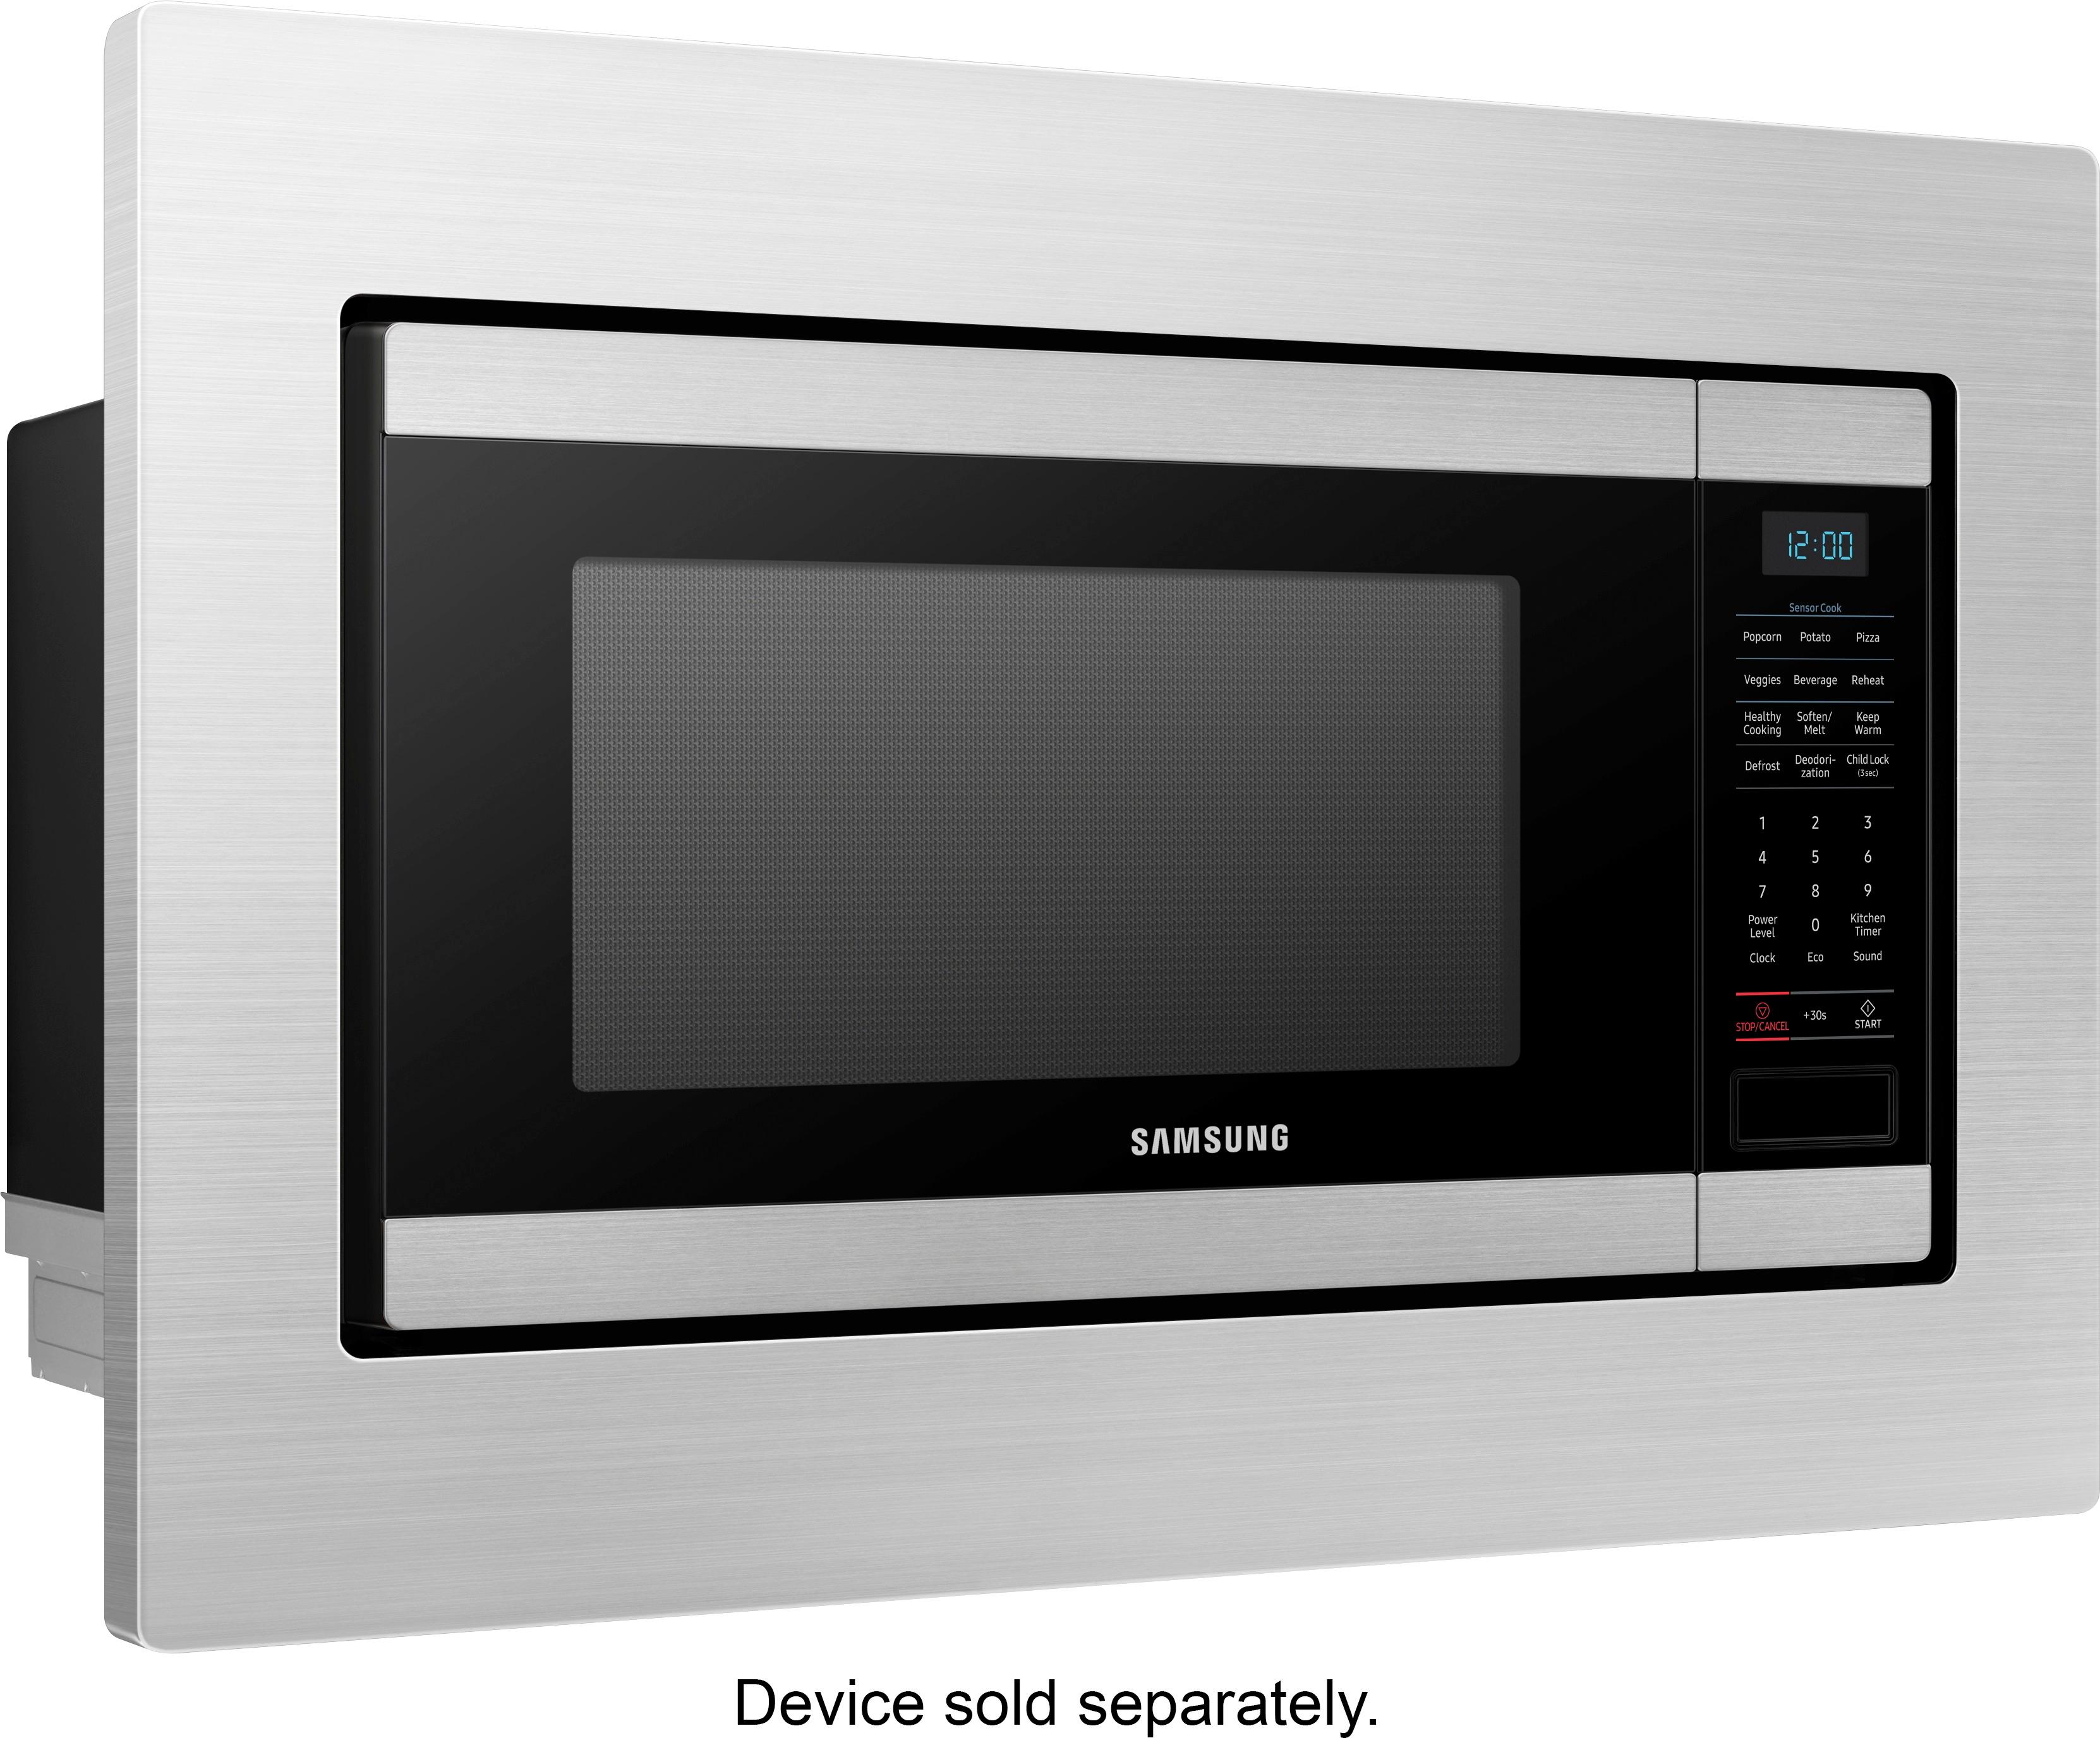 Angle View: GE - 30" Trim Kit for Profile Microwaves - Black Slate